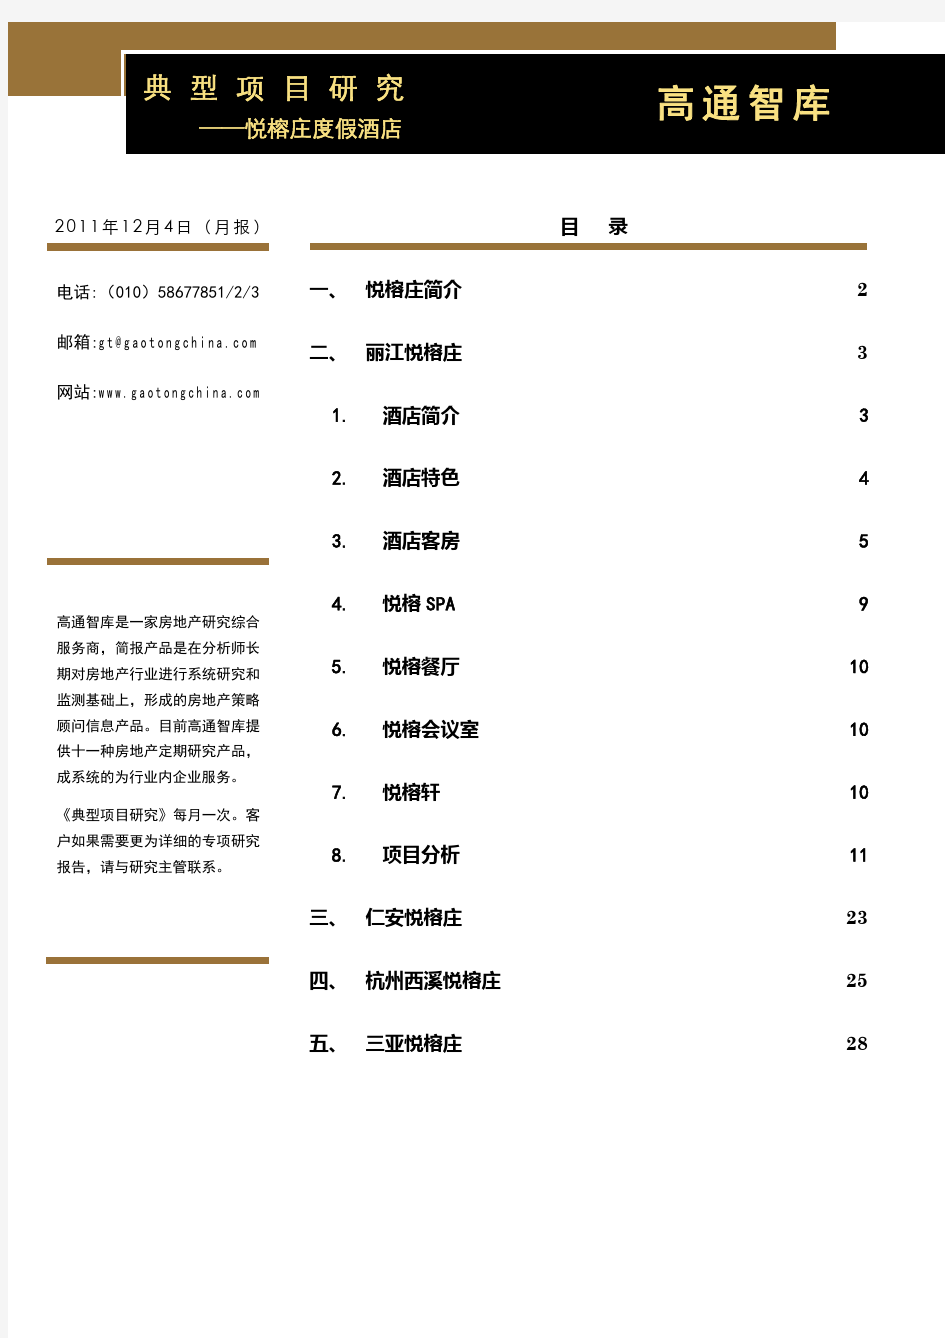 典型项目研究报告——悦榕庄度假酒店 (20111204)